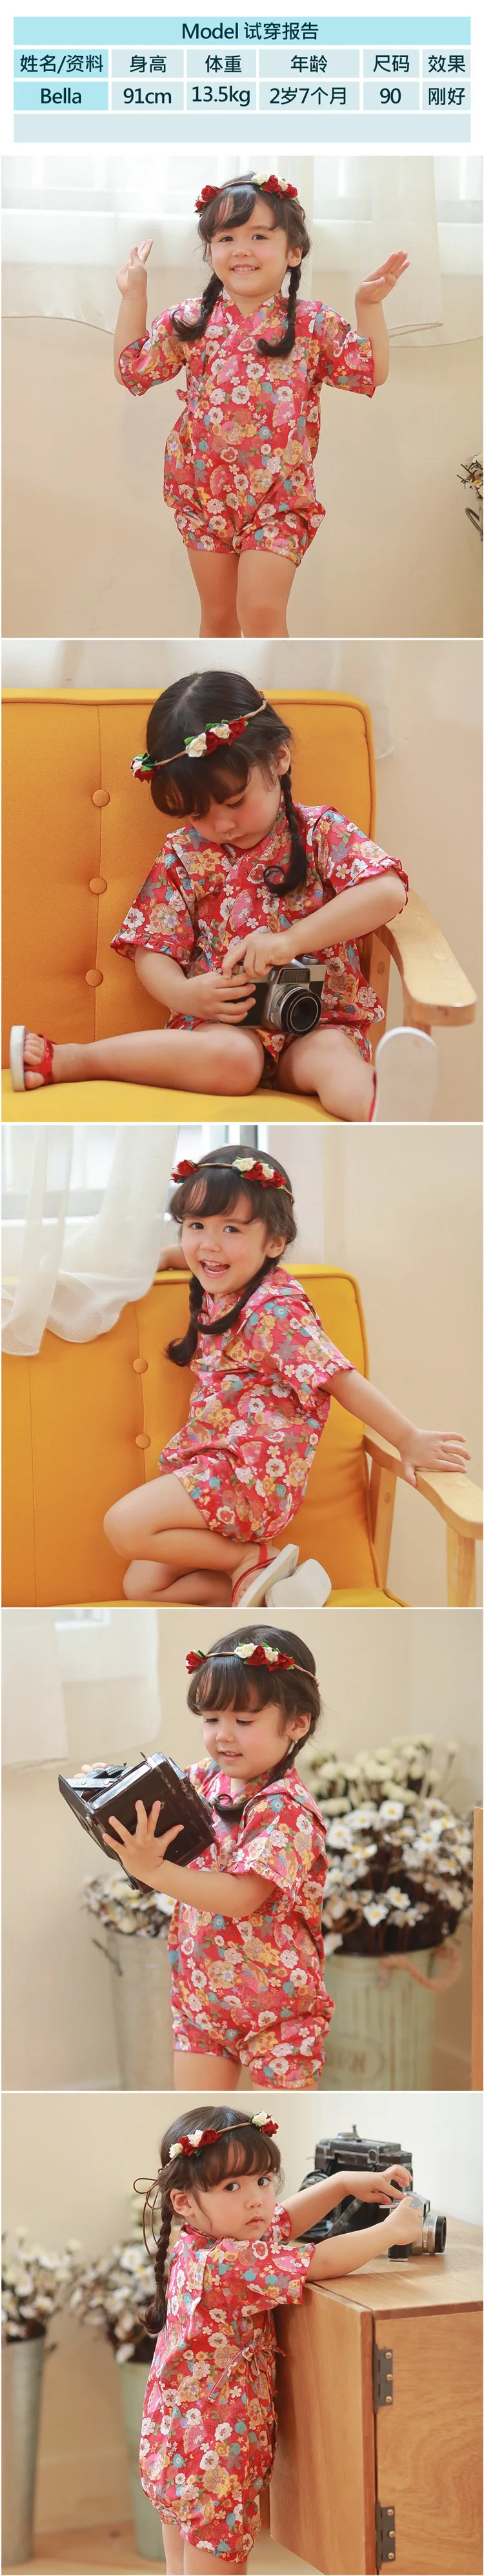 Детский летний комбинезон одежда для девочек кимоно в японском стиле bebe комбинезон Ретро Халат униформа Одежда пижамы для мальчиков Ползунки